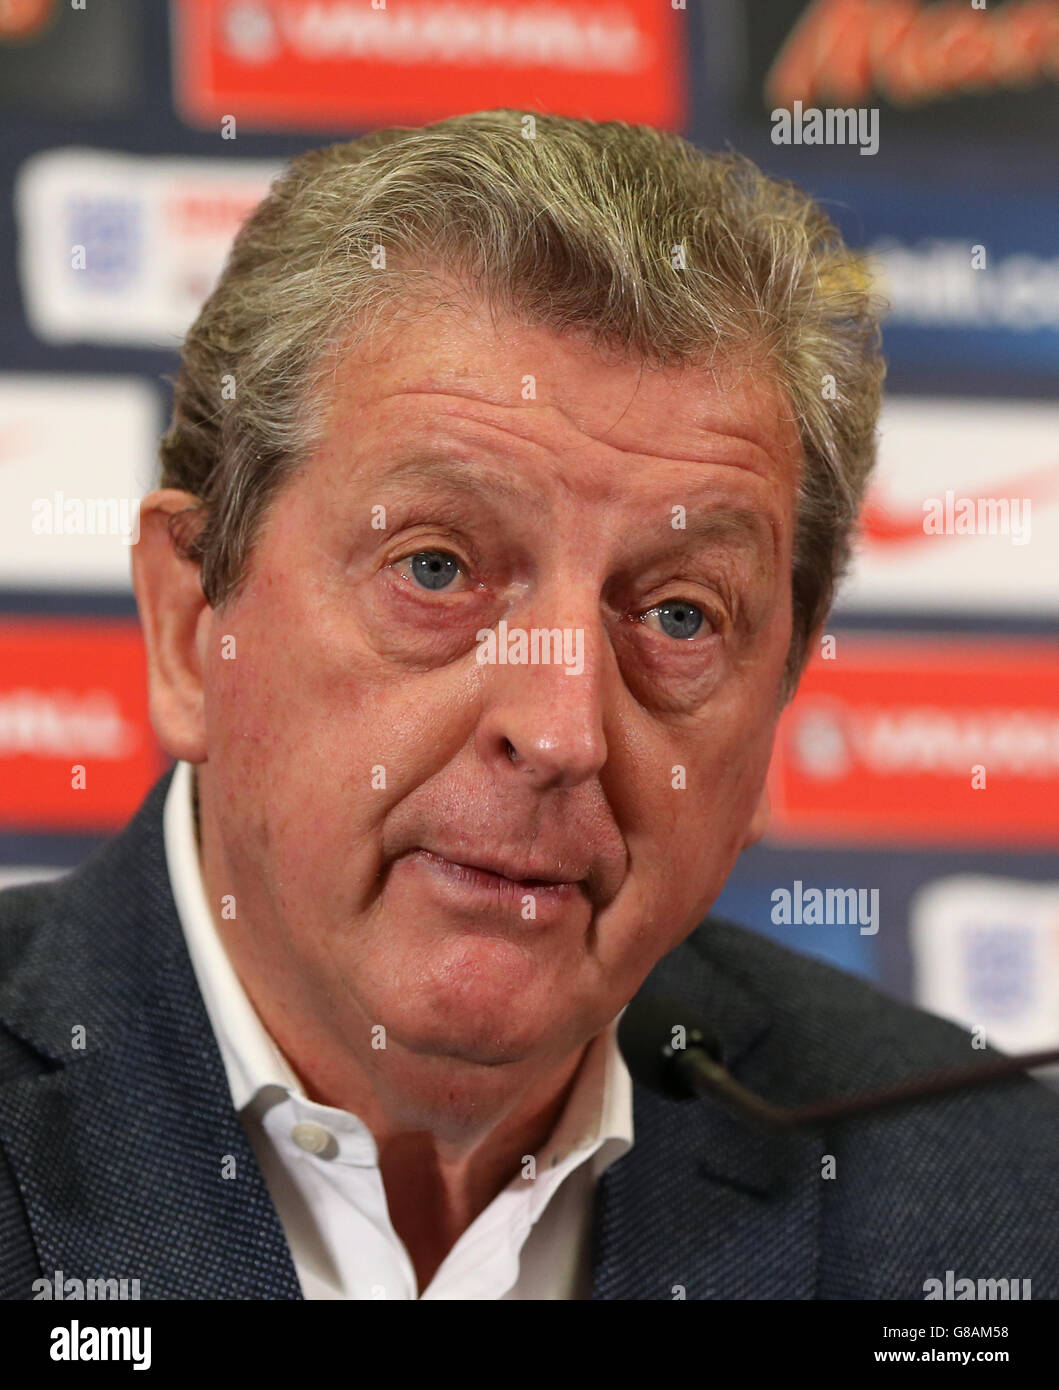 Calcio - Qualifiche UEFA Euro 2016 - Inghilterra / Estonia - Annuncio squadra Inghilterra - Stadio di Wembley. Il manager inglese Roy Hodgson durante l'annuncio della squadra al Wembley Stadium di Londra. Foto Stock